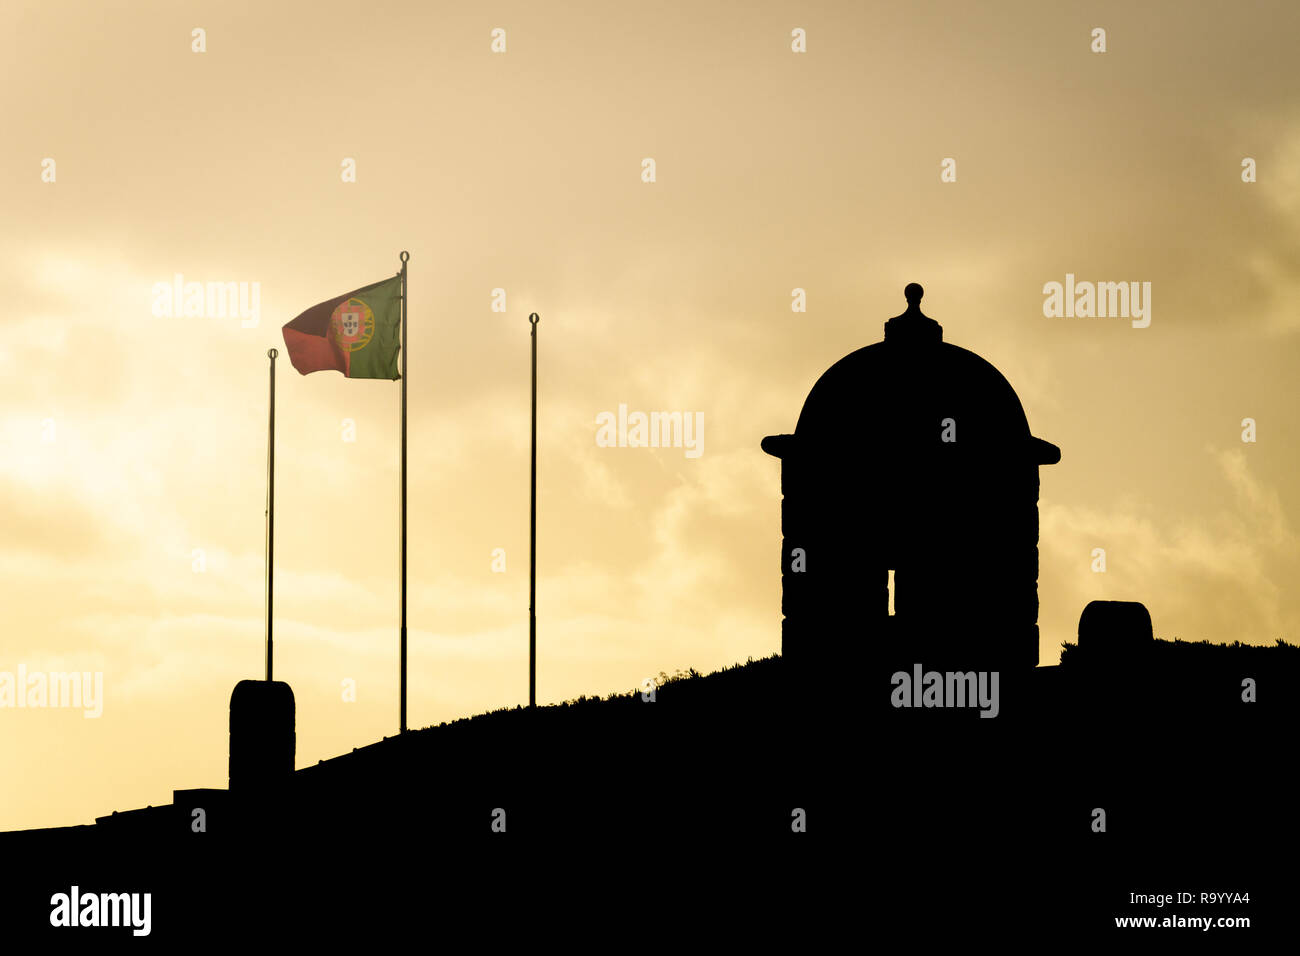 Silhouette eines kleinen Schloss mit einem portugiesischen Fahne im Wind. Sonnenuntergang. Kopieren Sie Platz. Stockfoto